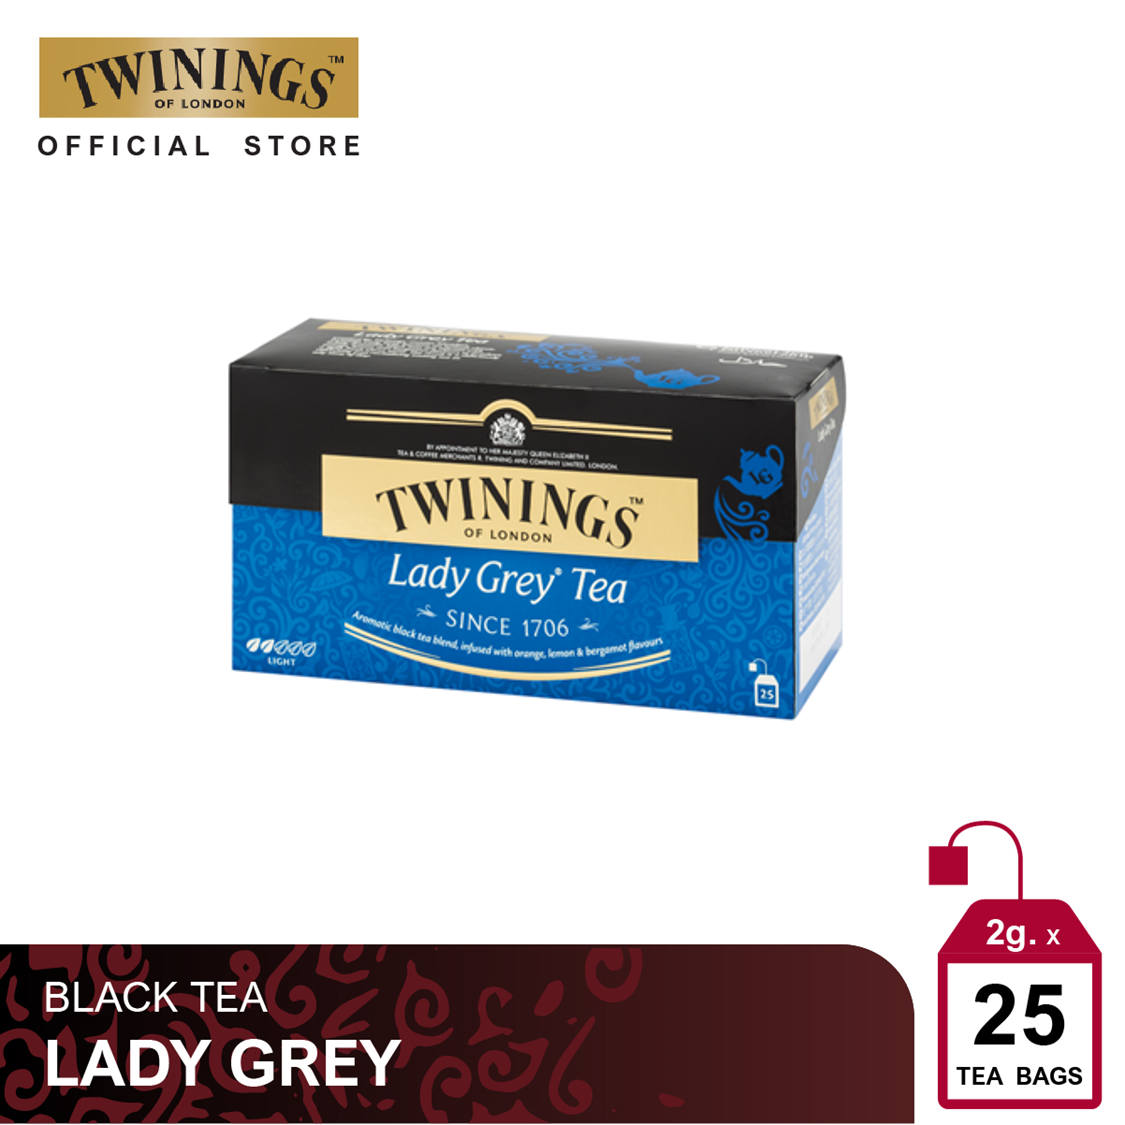 ทไวนิงส์ ชาสีทองอ่อน รสเบา เลดี้ เกรย์ ชนิดซอง 2 กรัม แพ็ค 25 ซอง Twinings Lady Grey Tea 2 g. Pack 25 Tea Bags